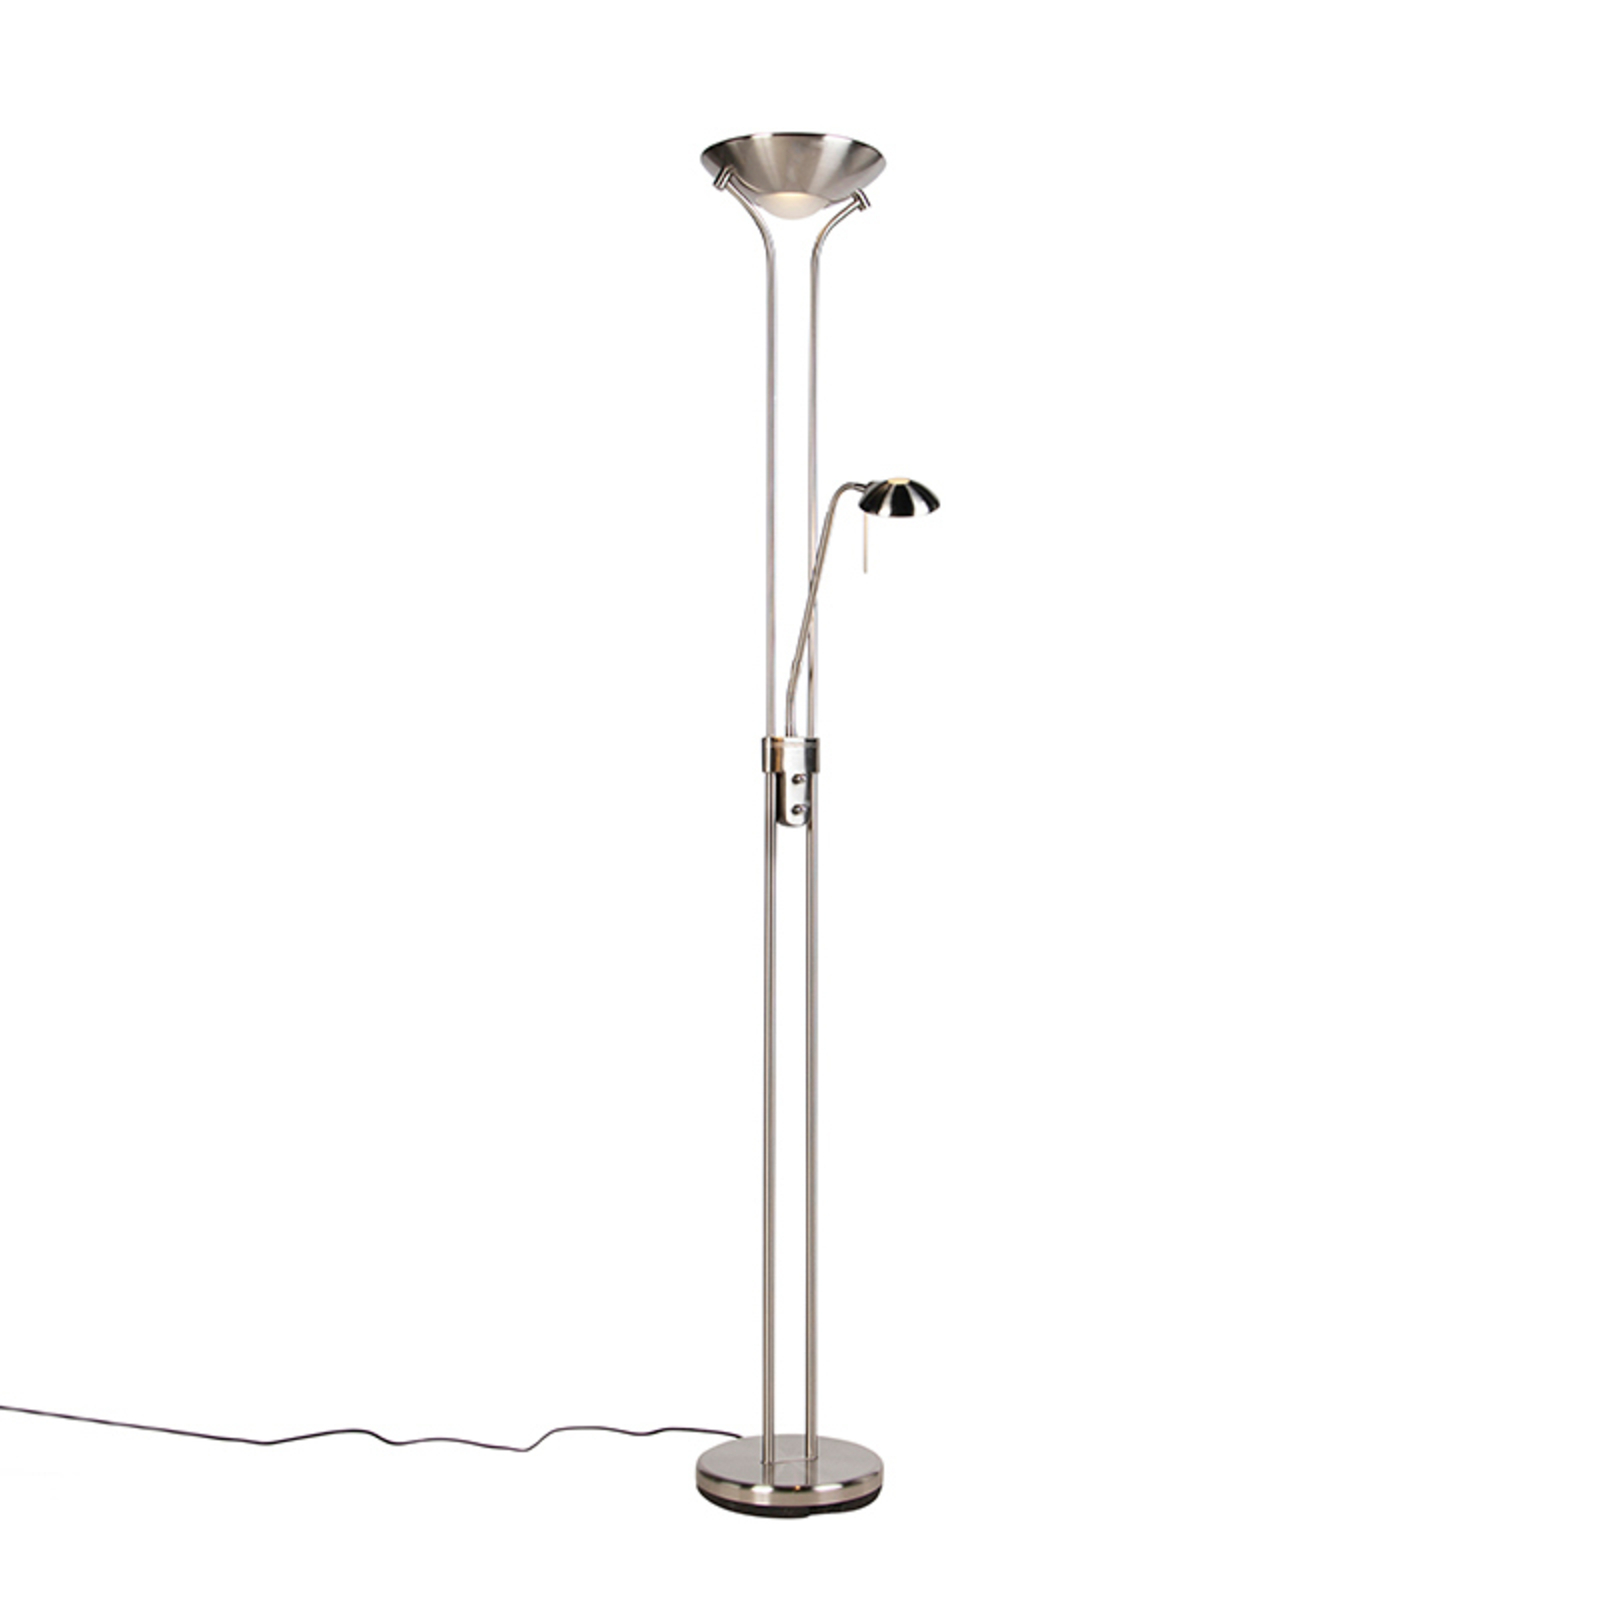 LED uplighter Diva met leeslamp, staal